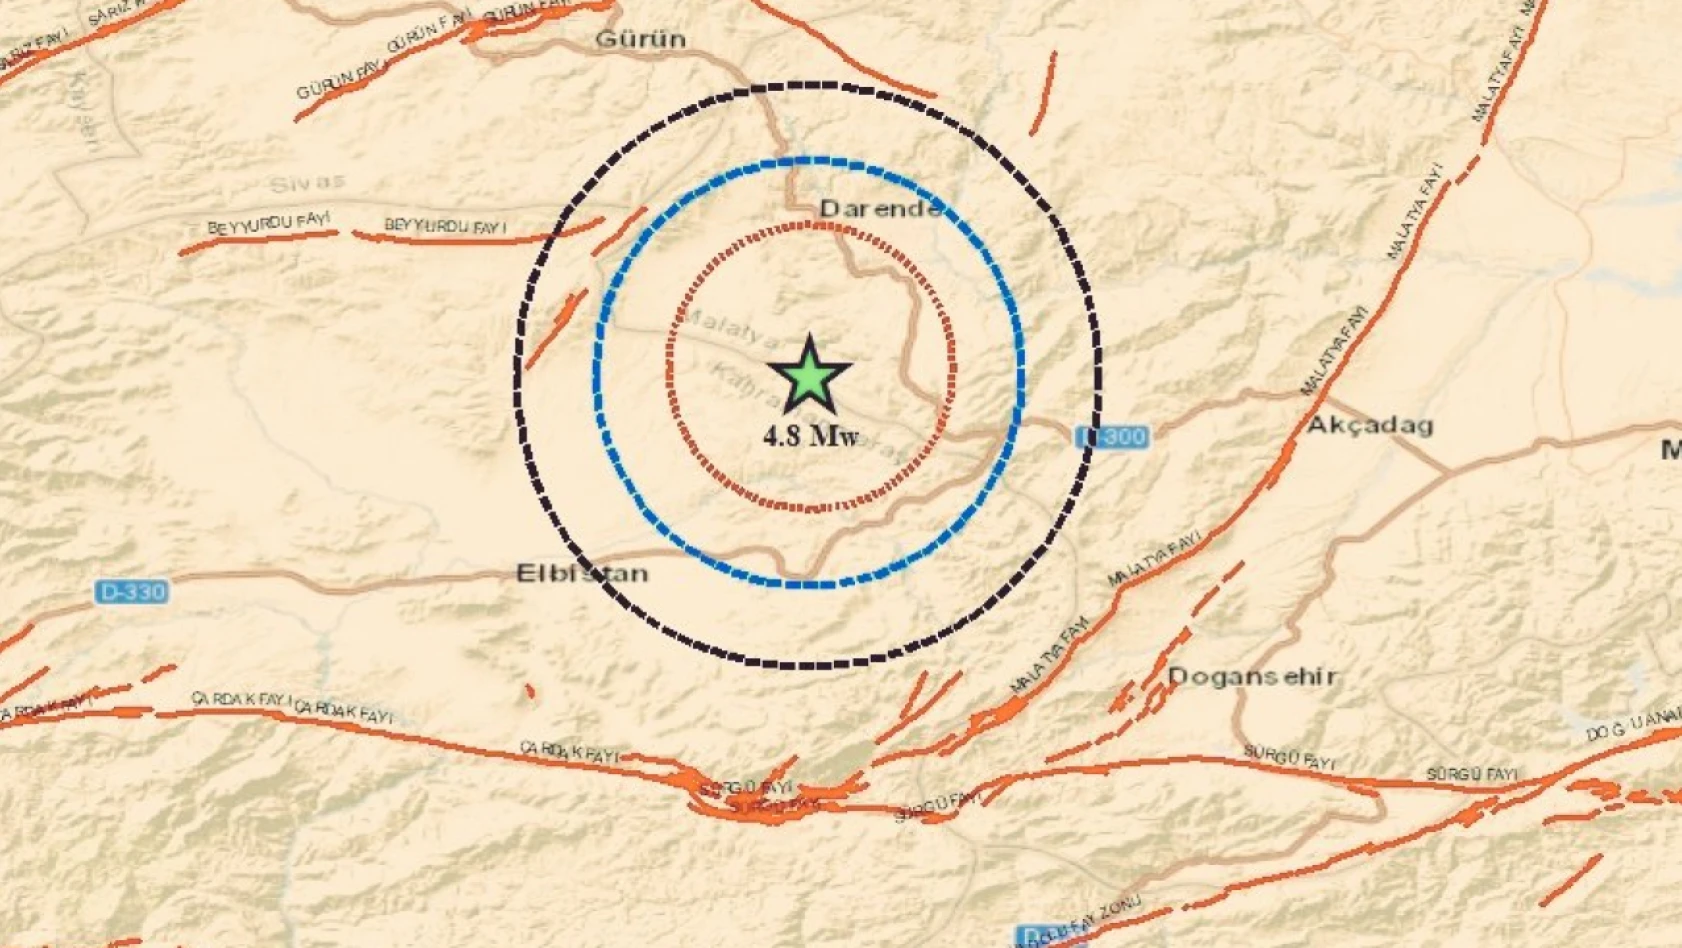 15 gün içinde 6.2 büyüklüğünde deprem olacak mı? Uzmanından dikkat çeken açıklama geldi